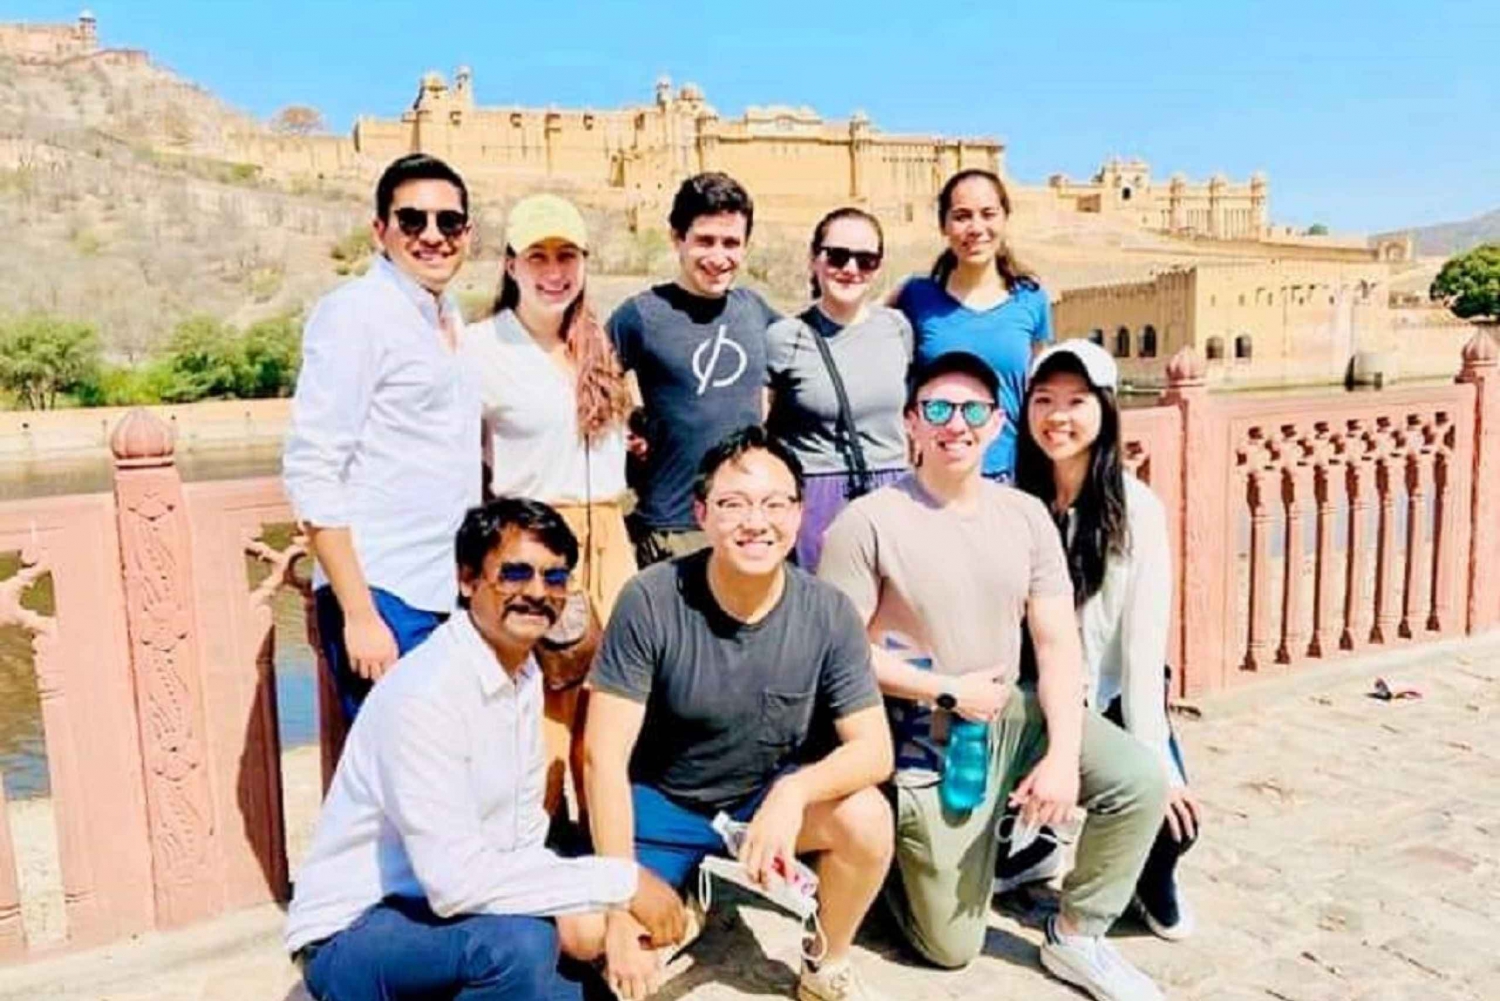 Libro Governo. Guida turistica approvata per il tour della città di Jaipur